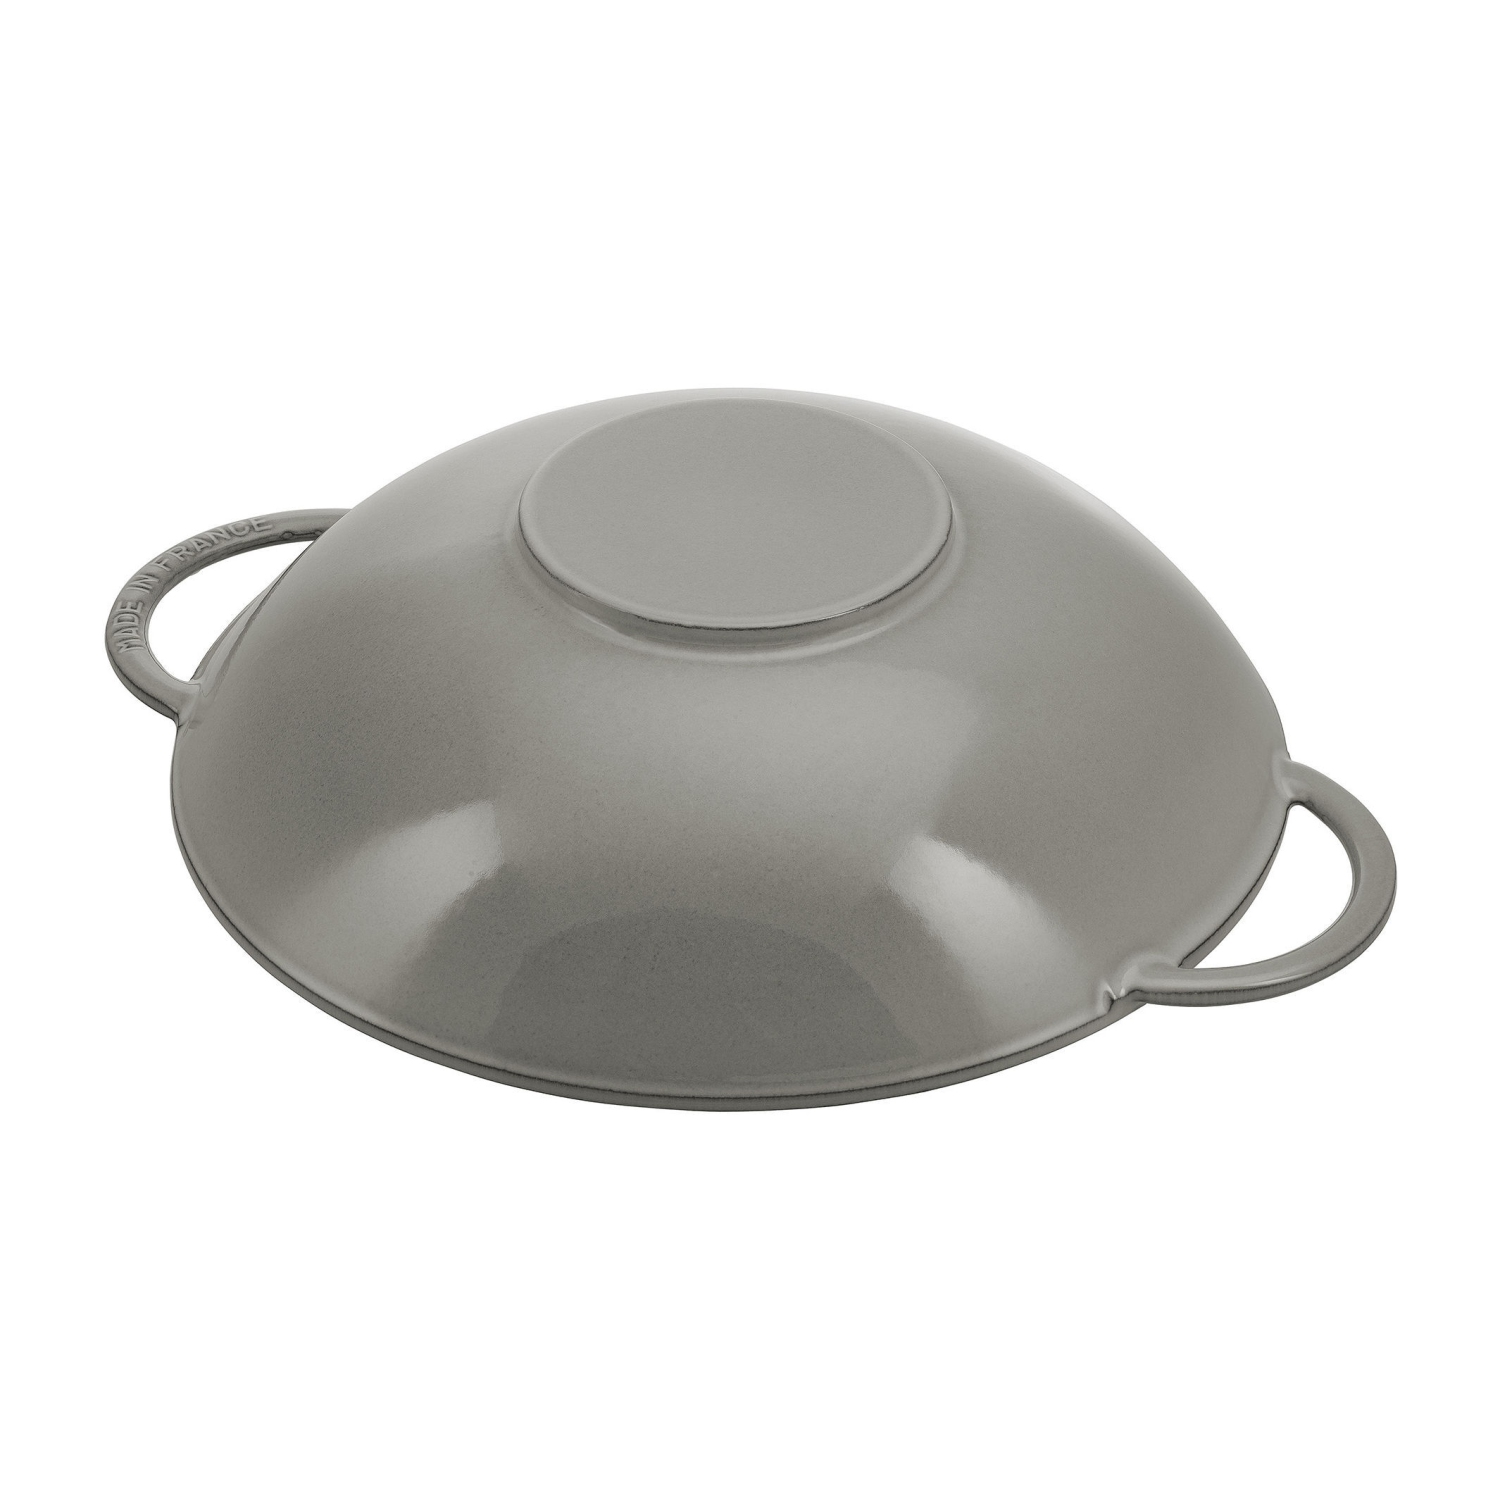 Staub Specialties Cast Iron Wok with Glass lid, 37cm (14.5in)